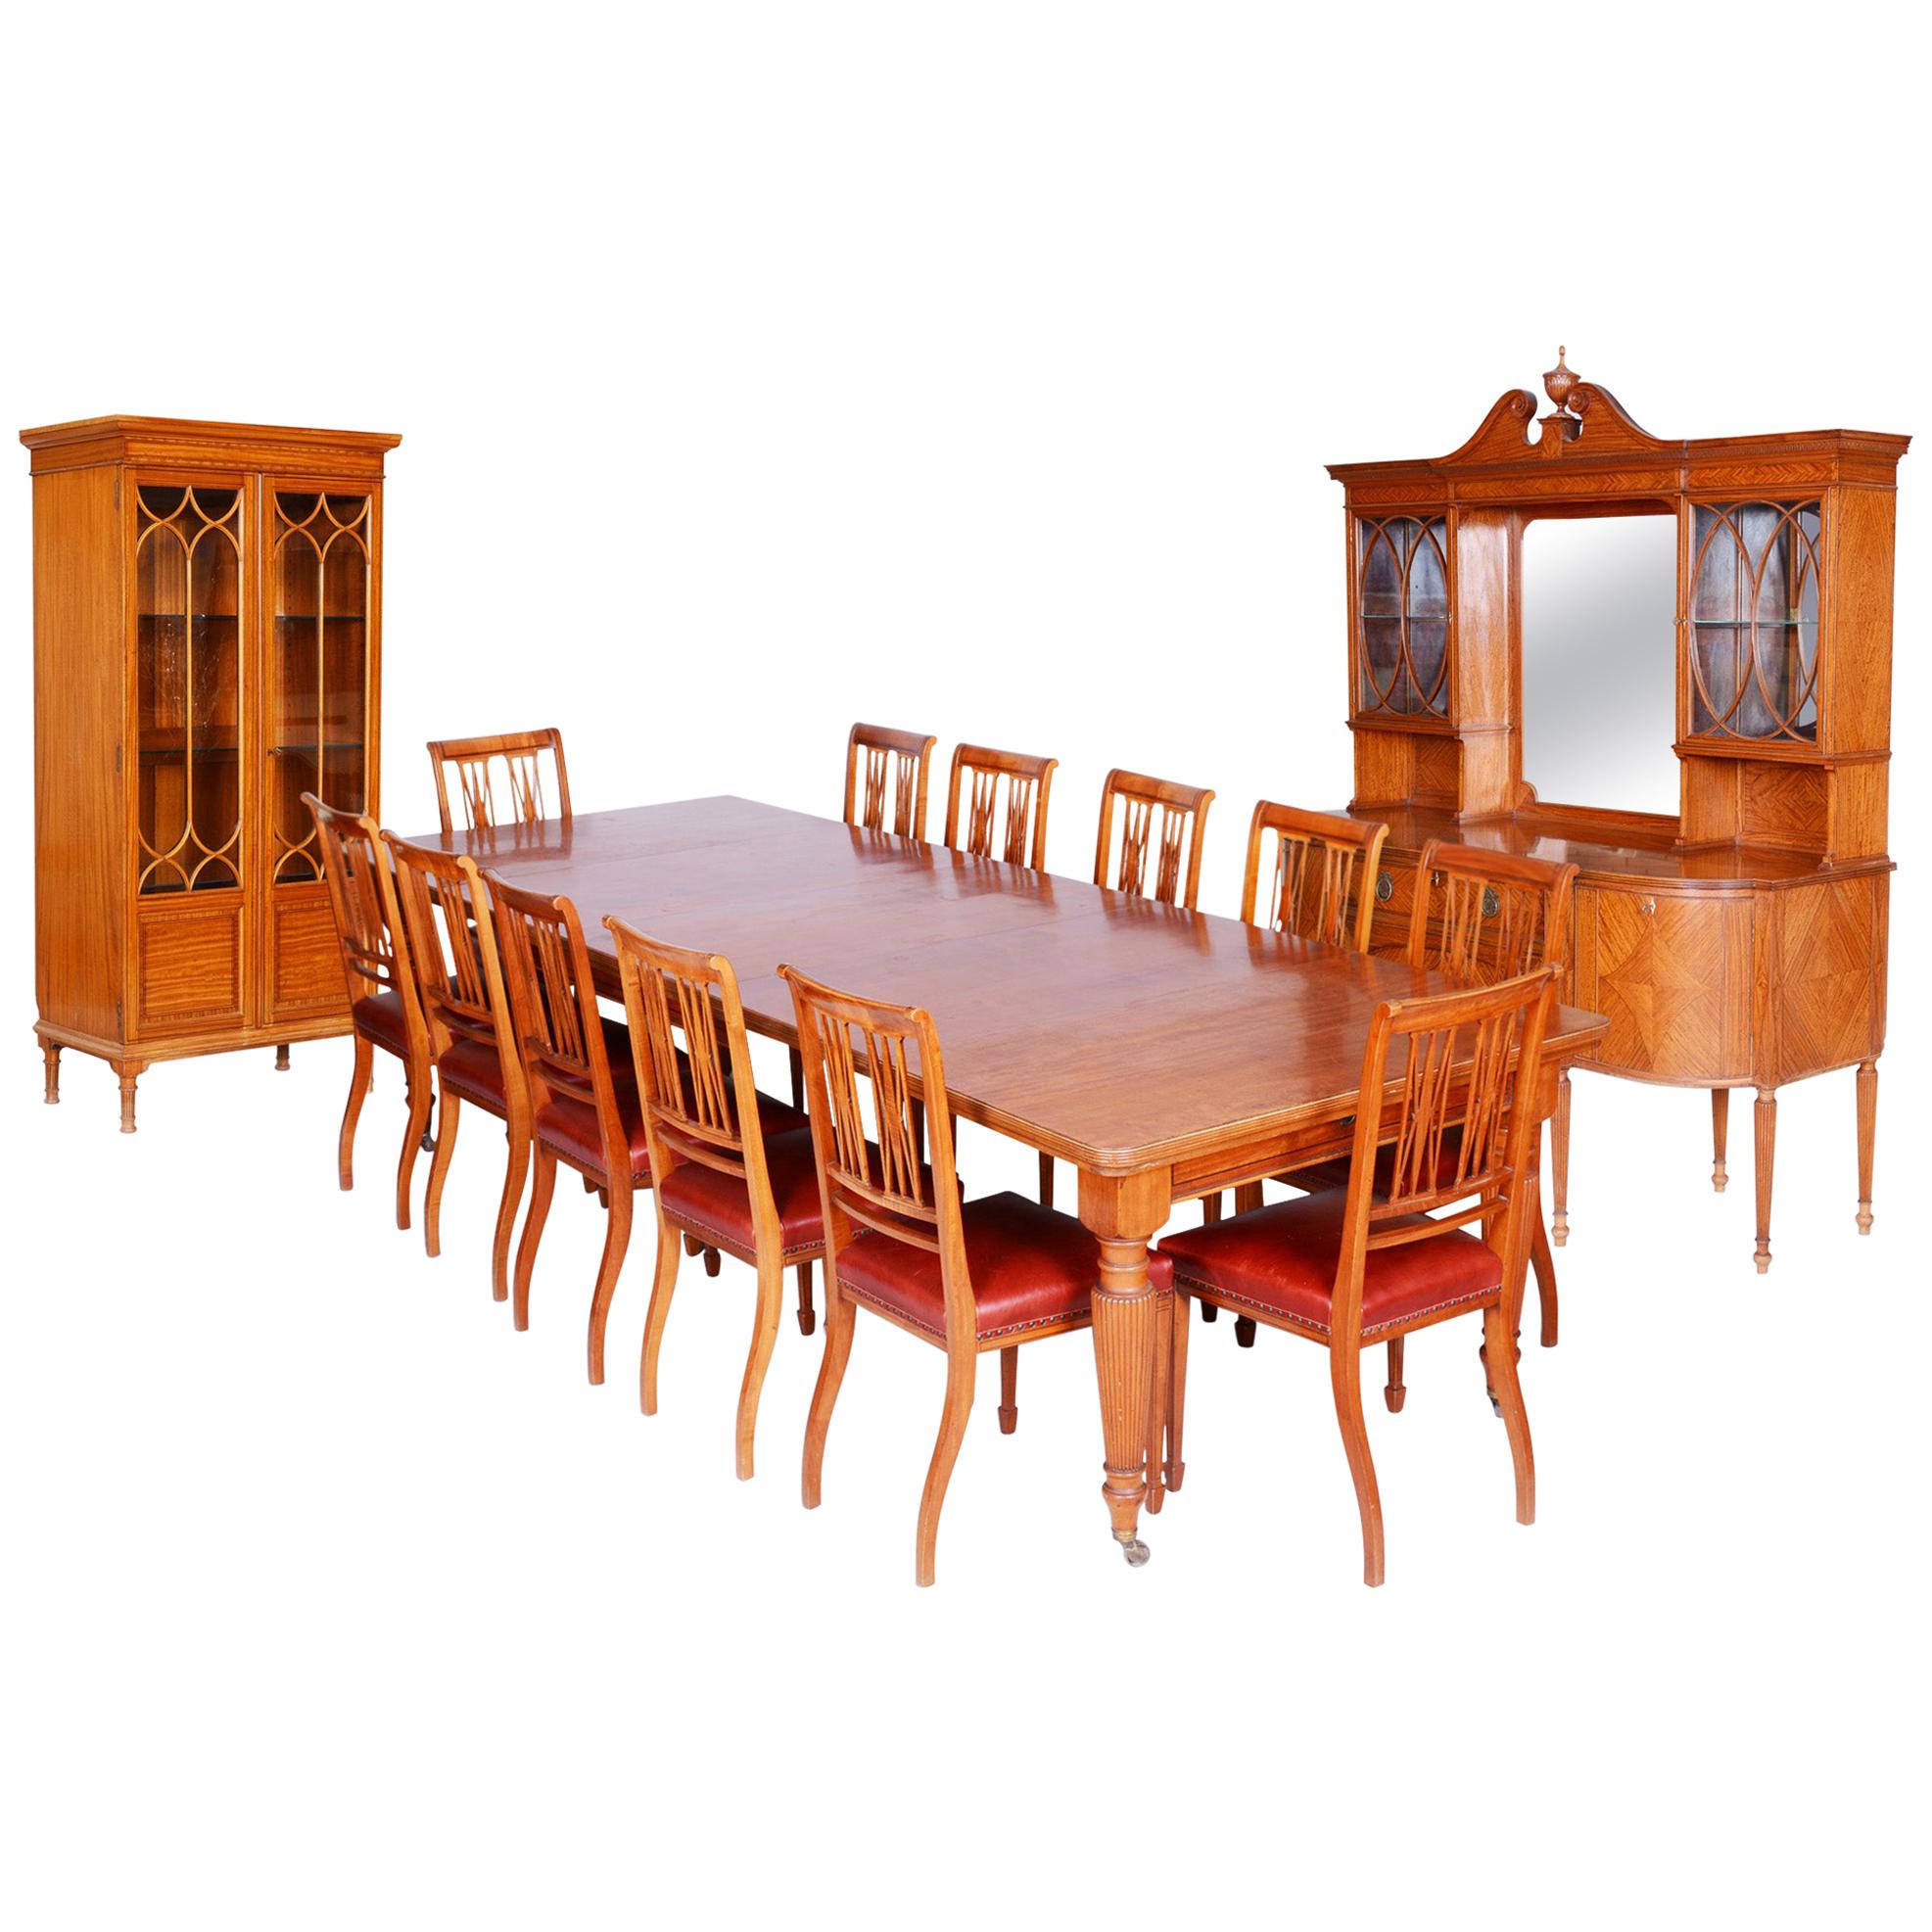 Ensemble rare de salle à manger britannique du 19ème siècle avec 12 chaises, bois satiné